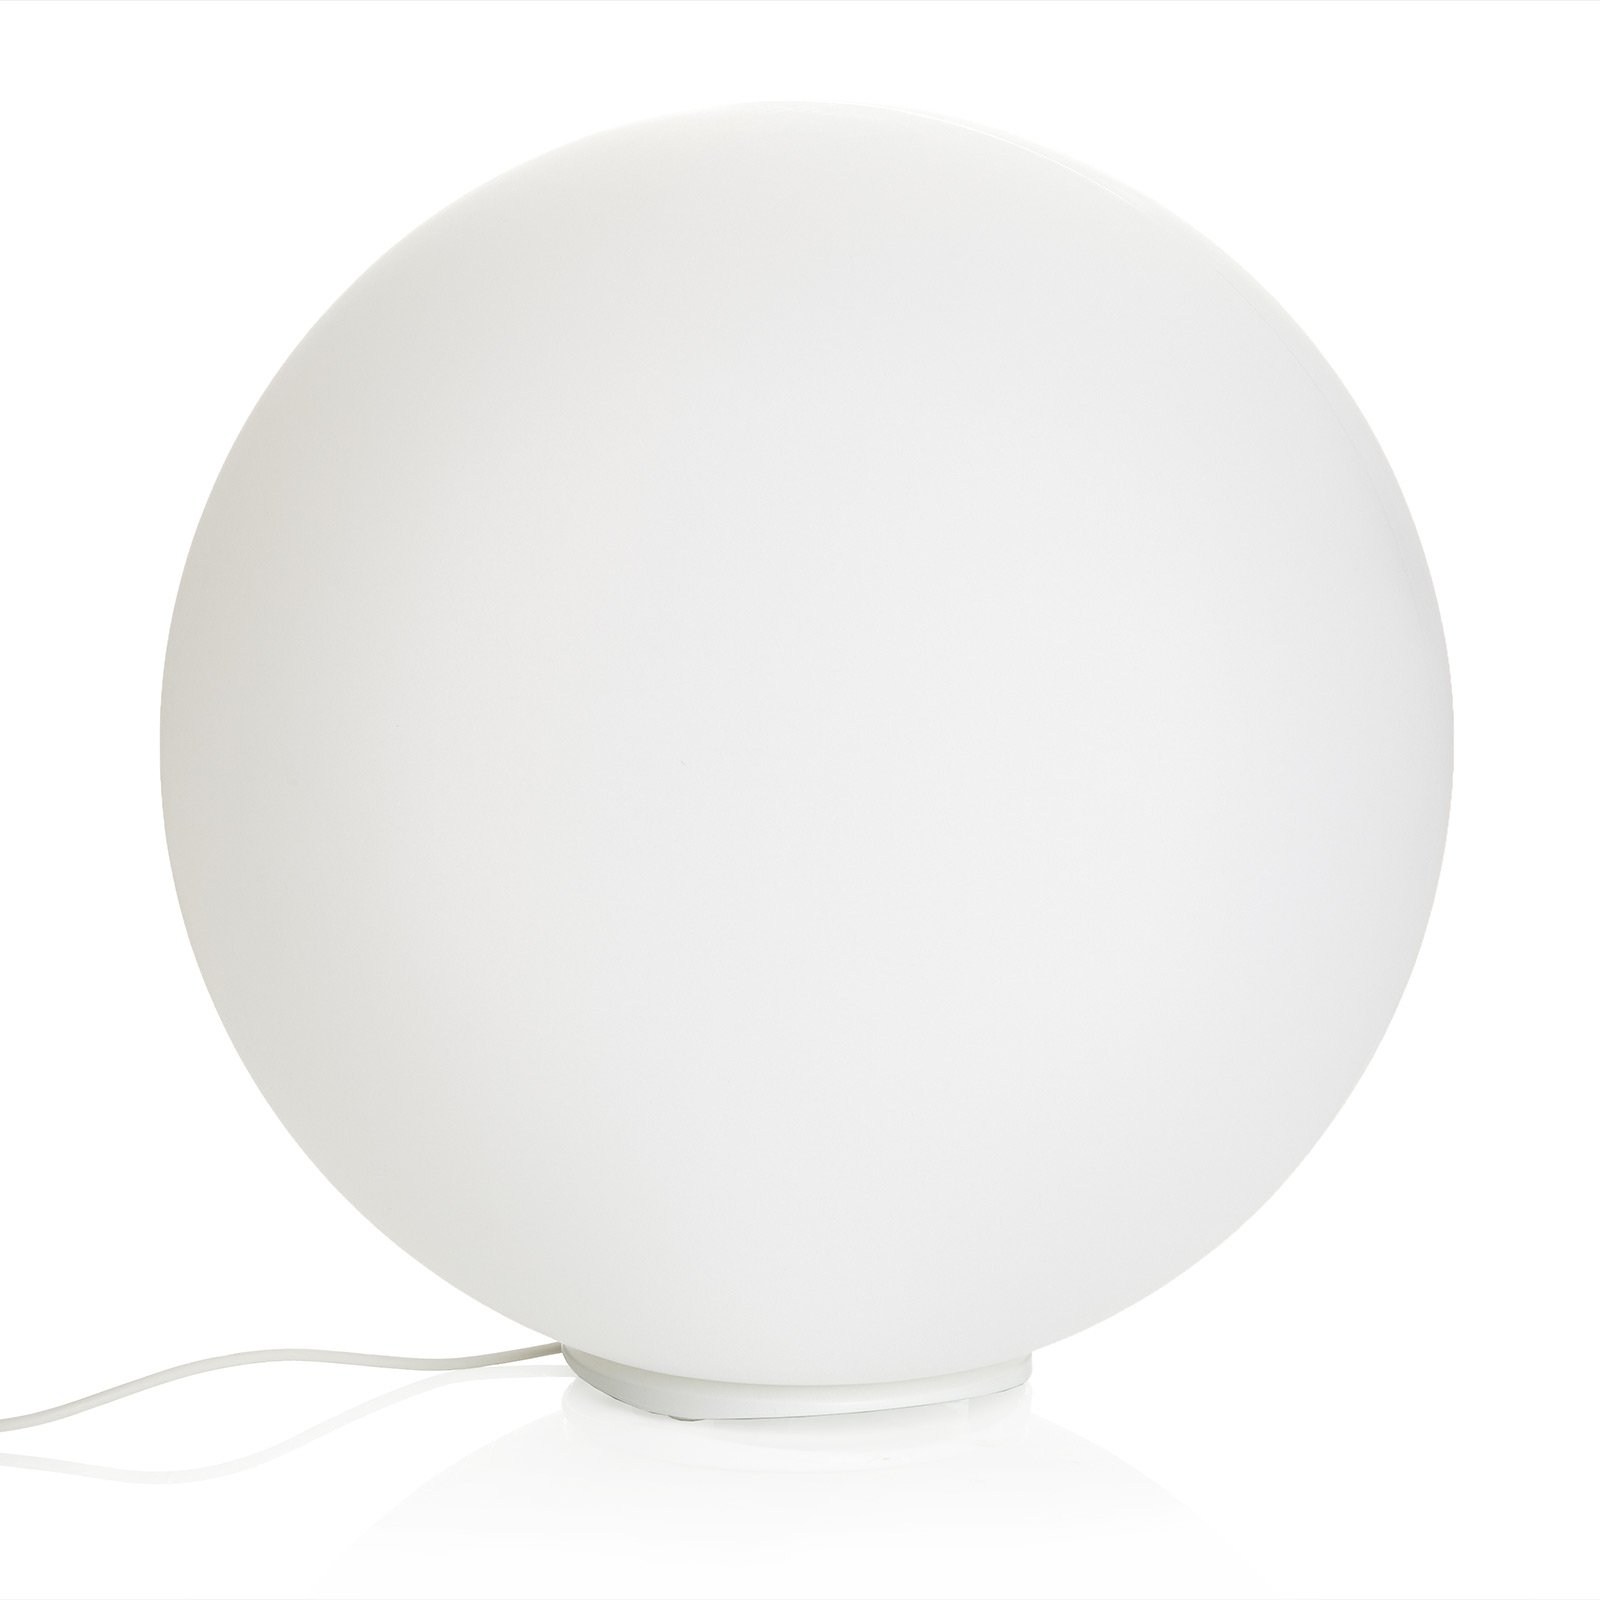 Ball flotante de lámpara decorativa LED